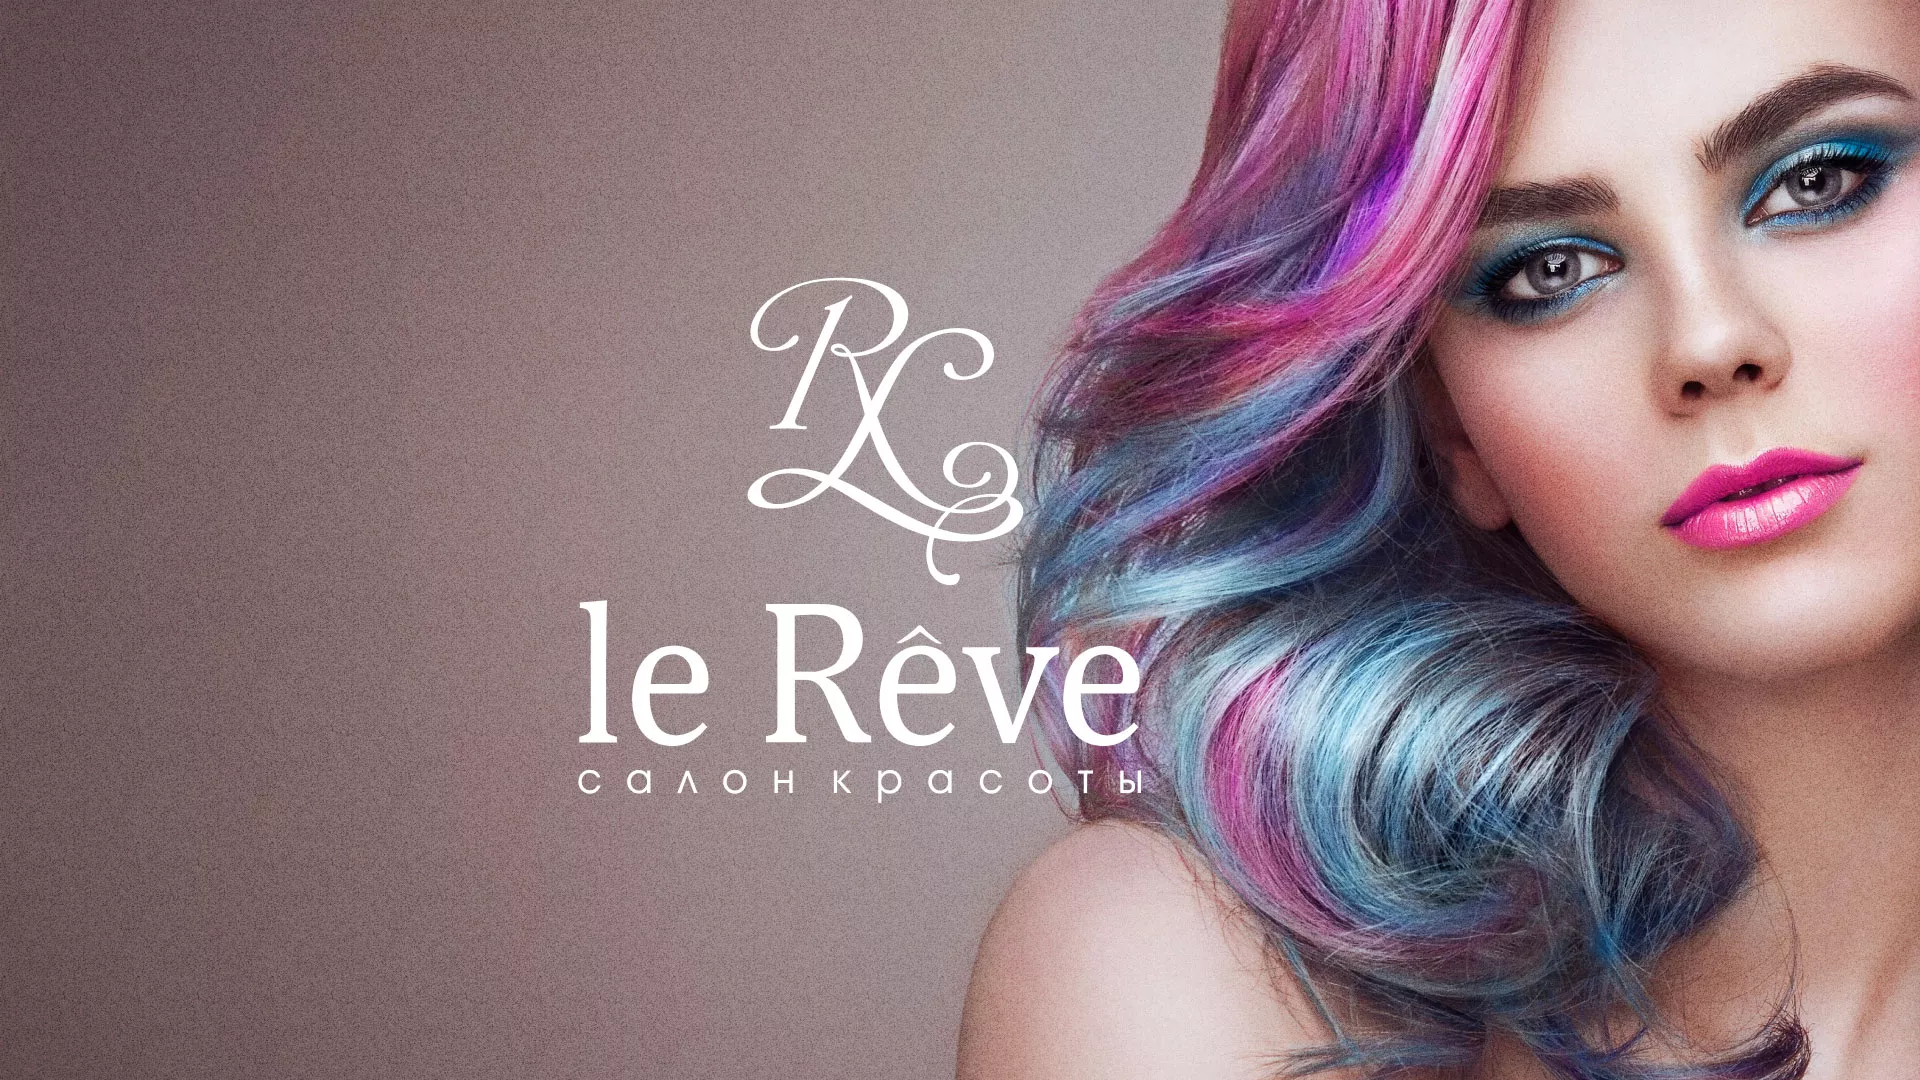 Создание сайта для салона красоты «Le Reve» в Одинцово